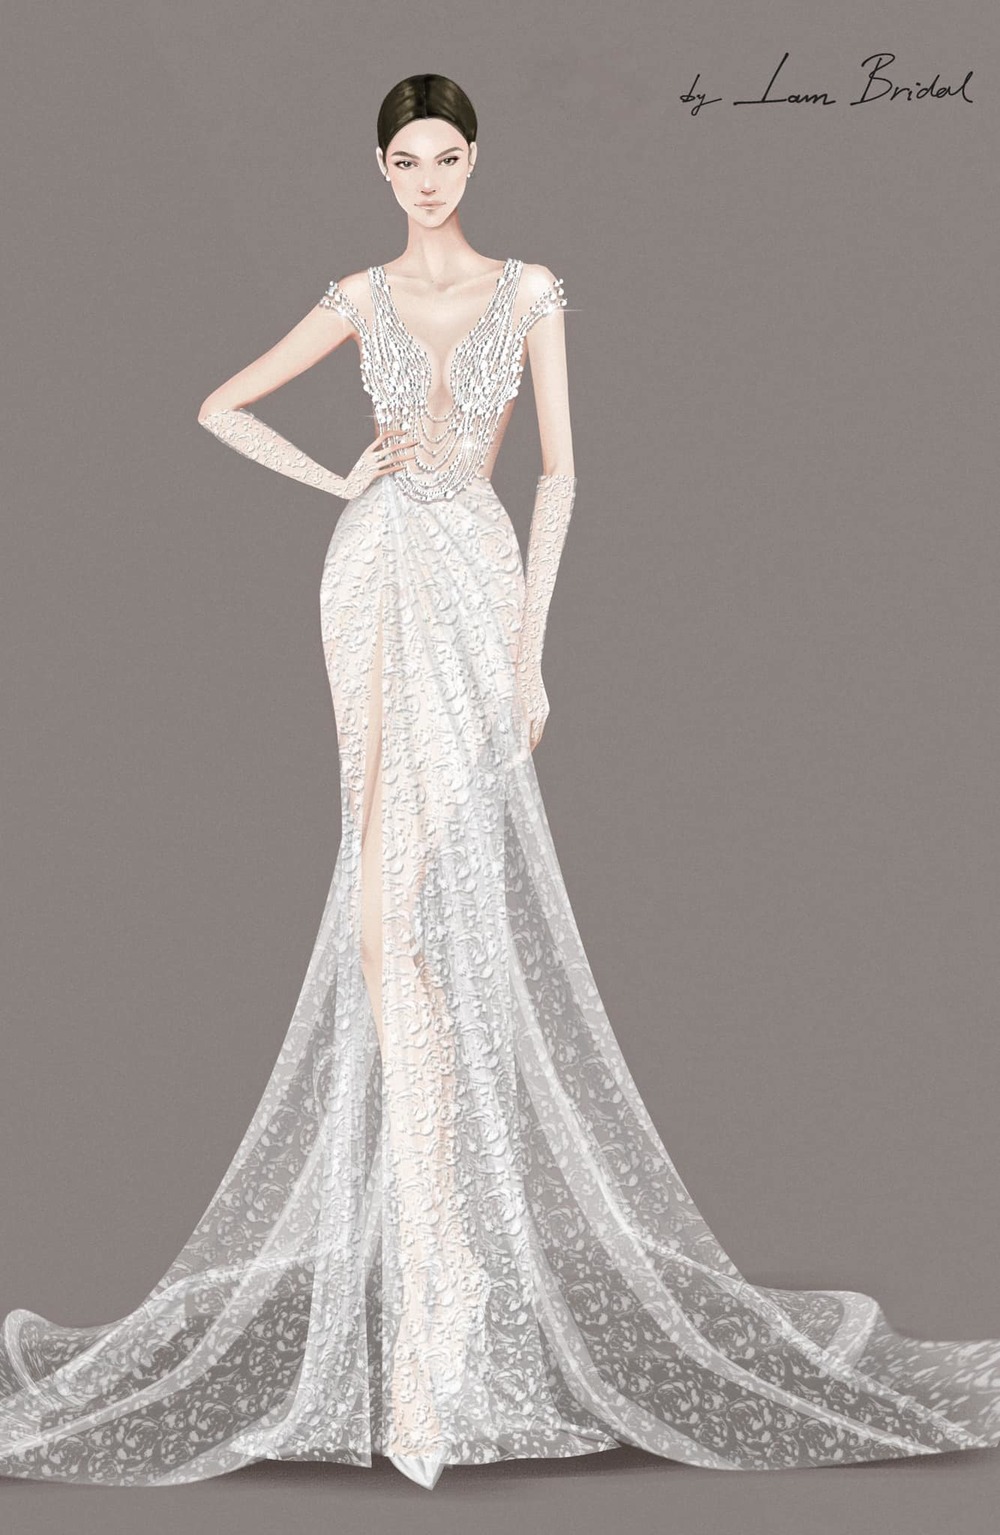 Phương Trinh Jolie nói gì về tranh cãi xoay quanh bộ váy cưới "siêu sexy" của mình?